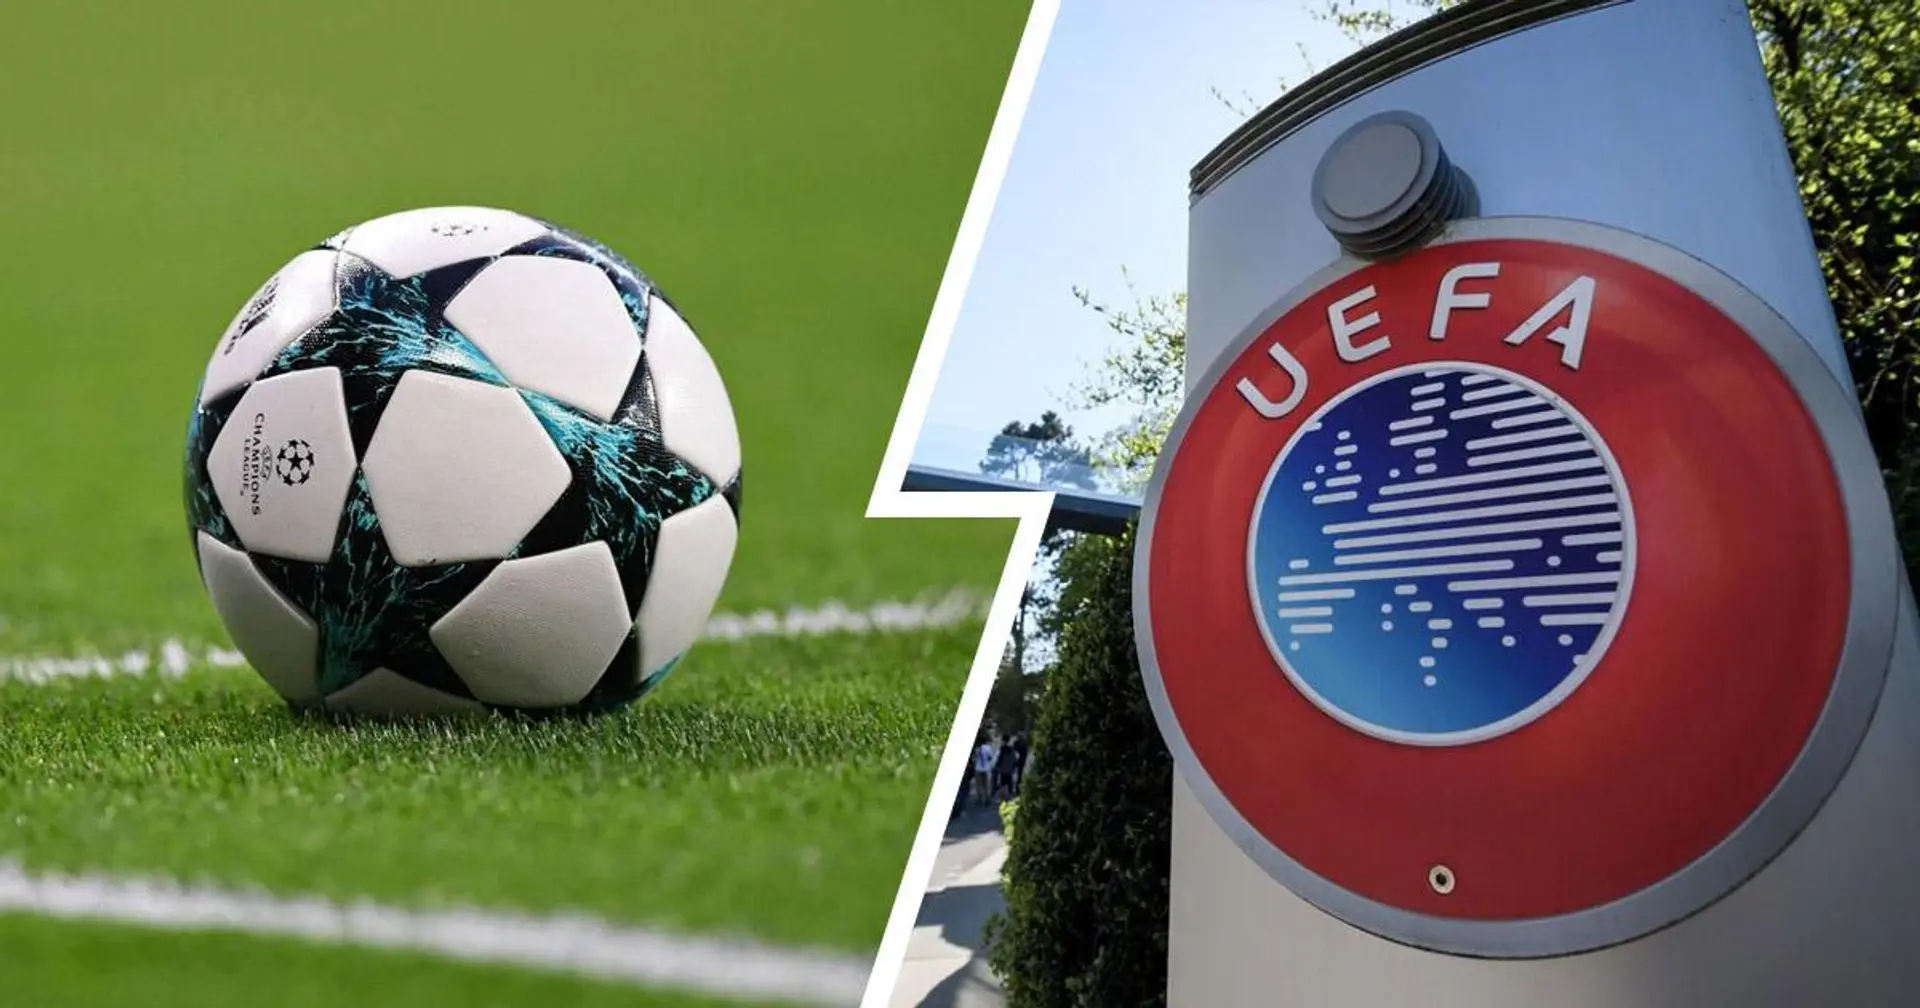 ⚡ OFFICIEL: l'UEFA supprime la règle du but à l'extérieur à partir de la saison 2021/22